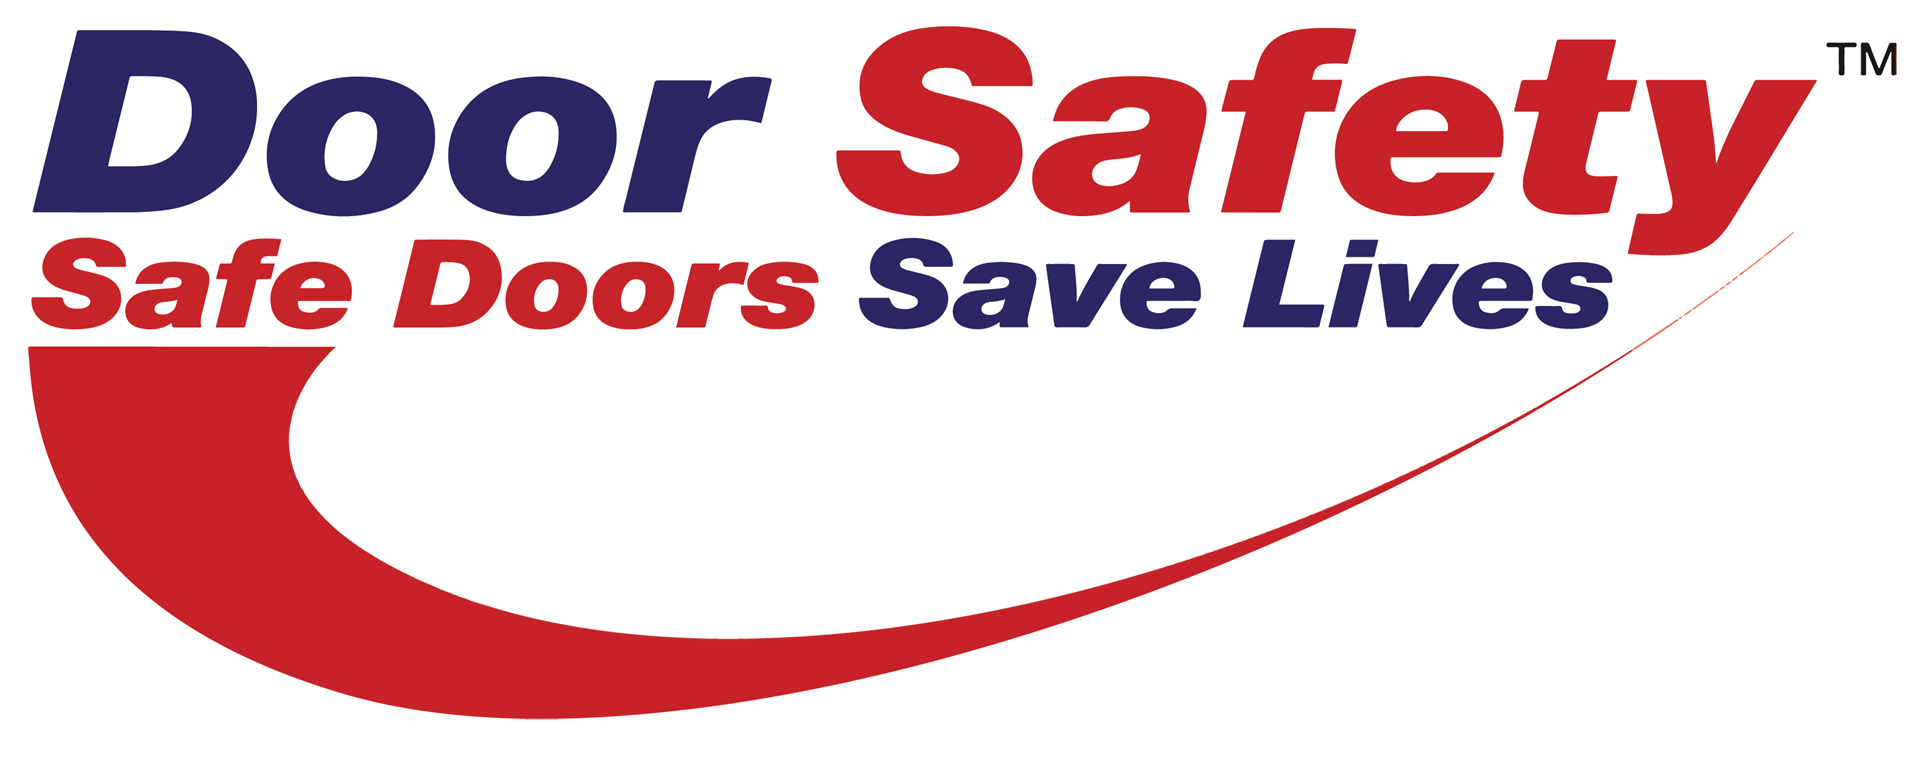 Safe Doors Save Lives